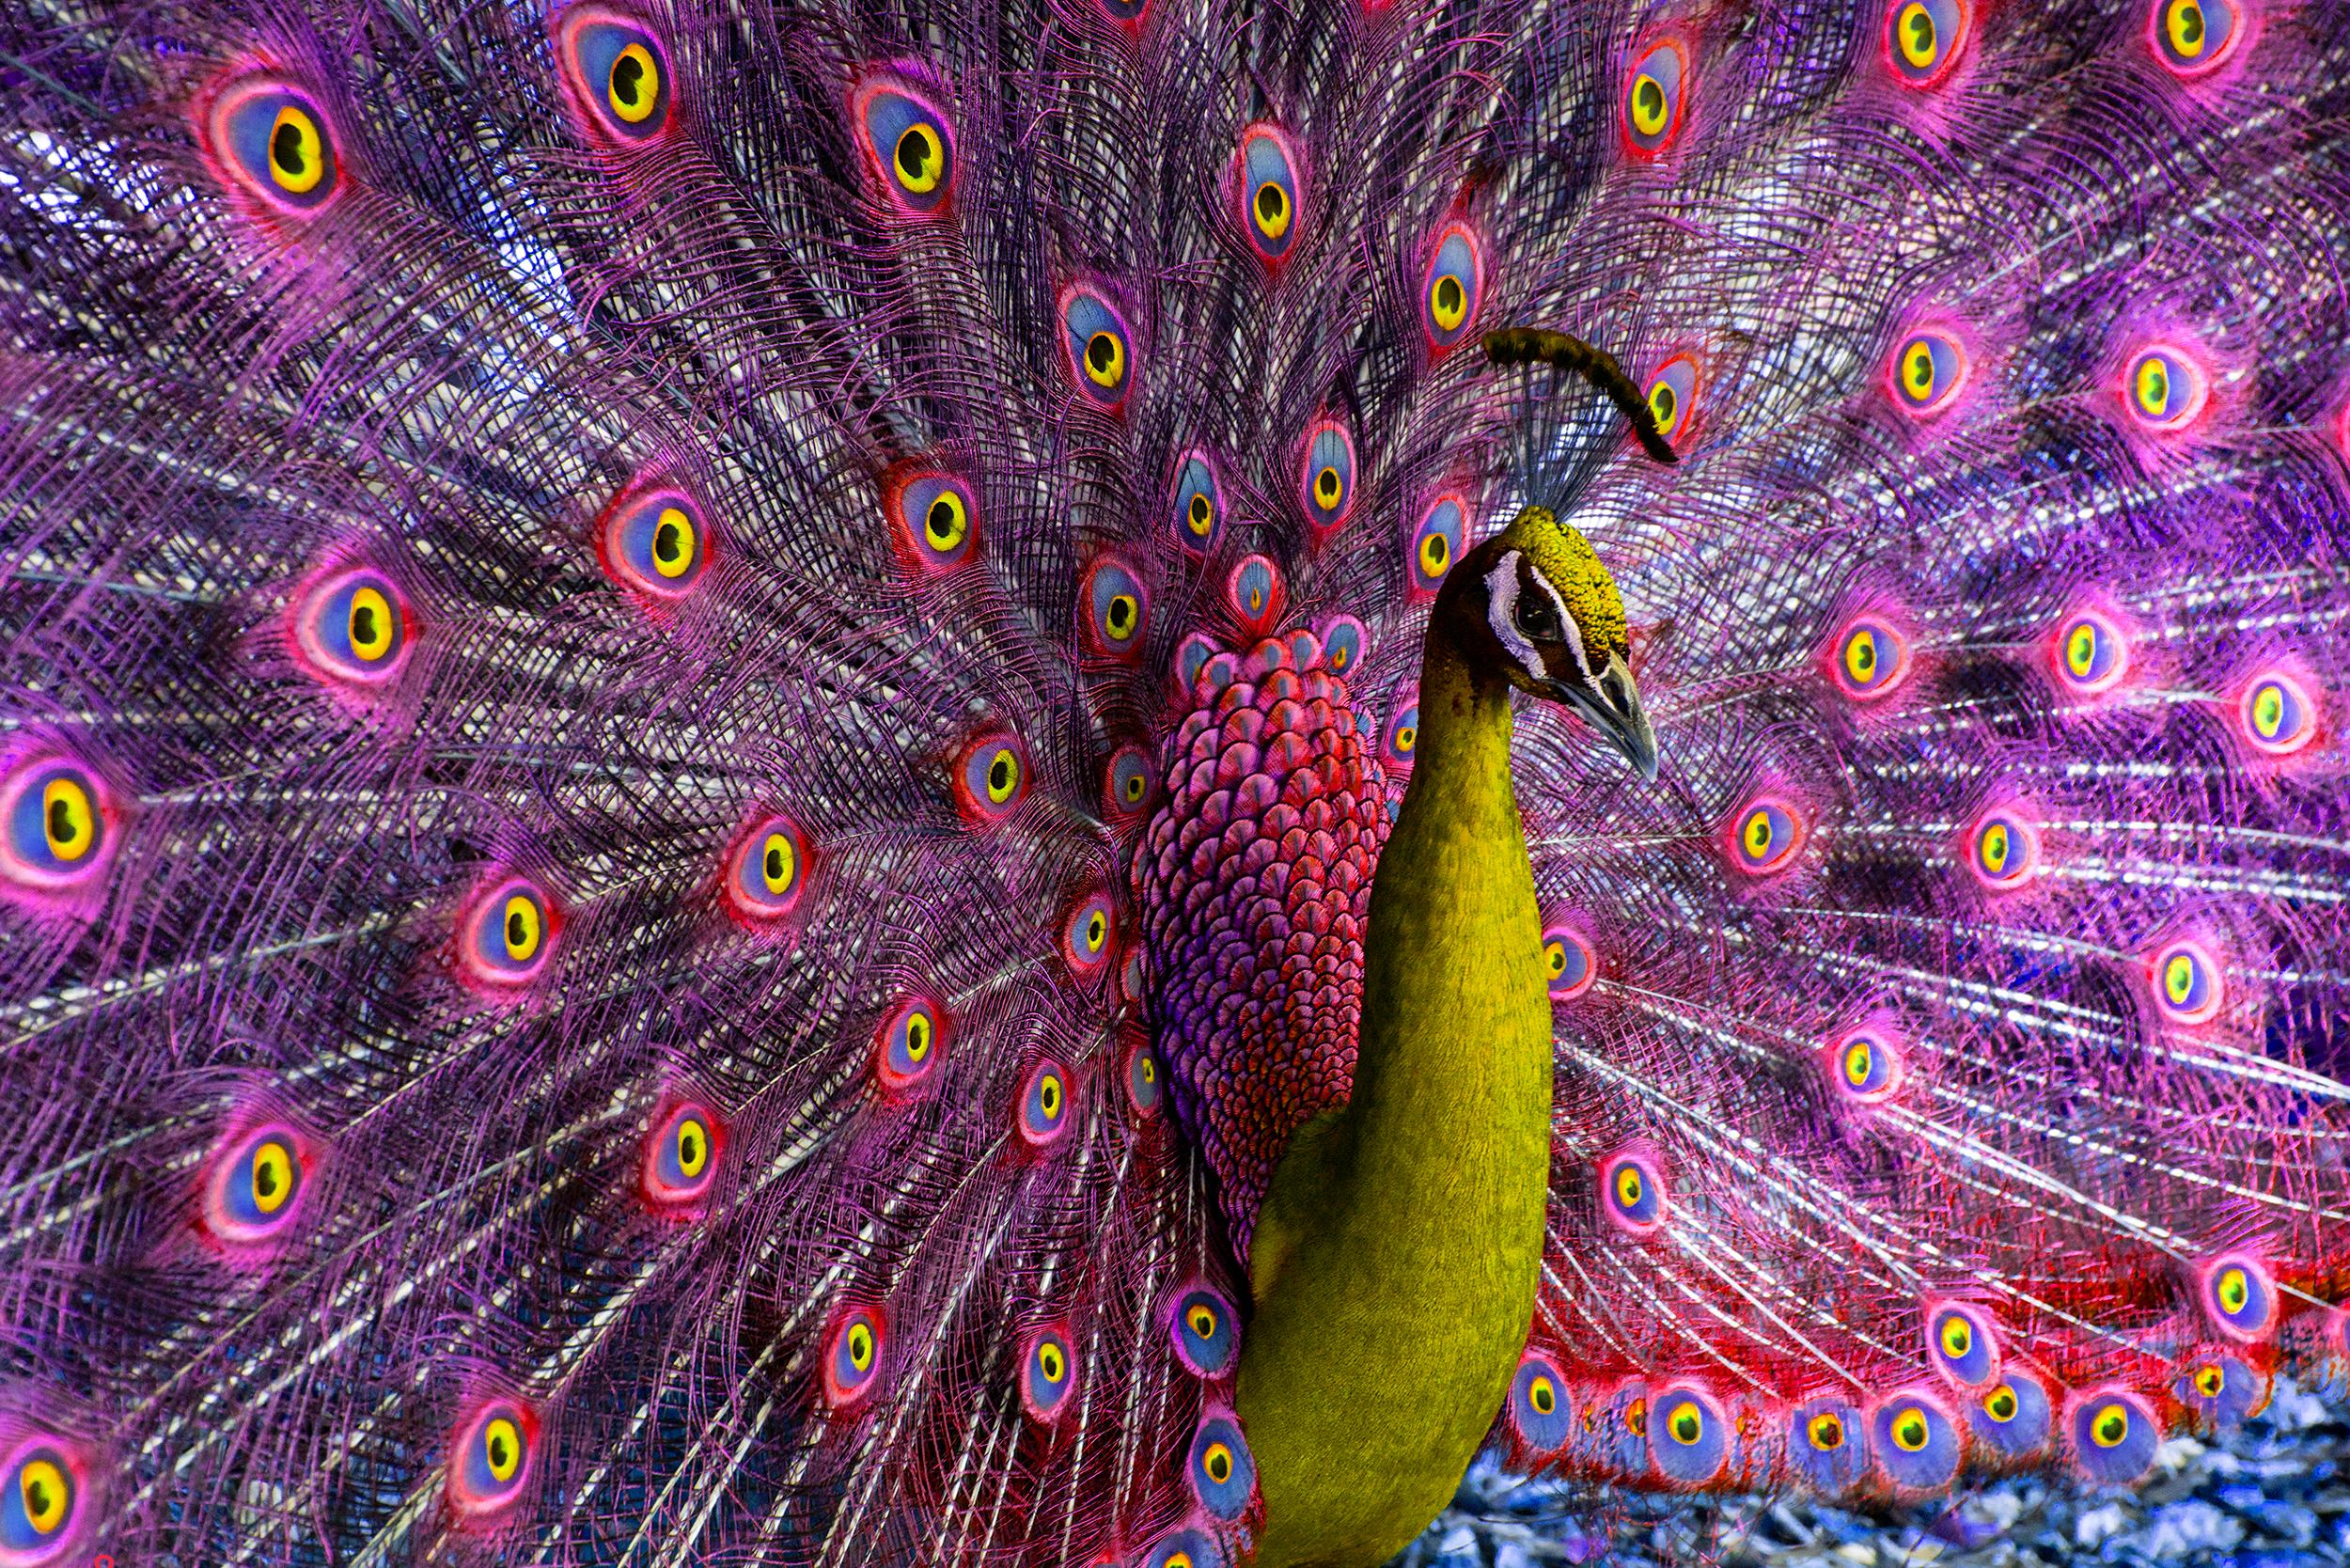 Robert Funk Figurative Photograph – Pfau mit Magenta- und gelben Vögeln